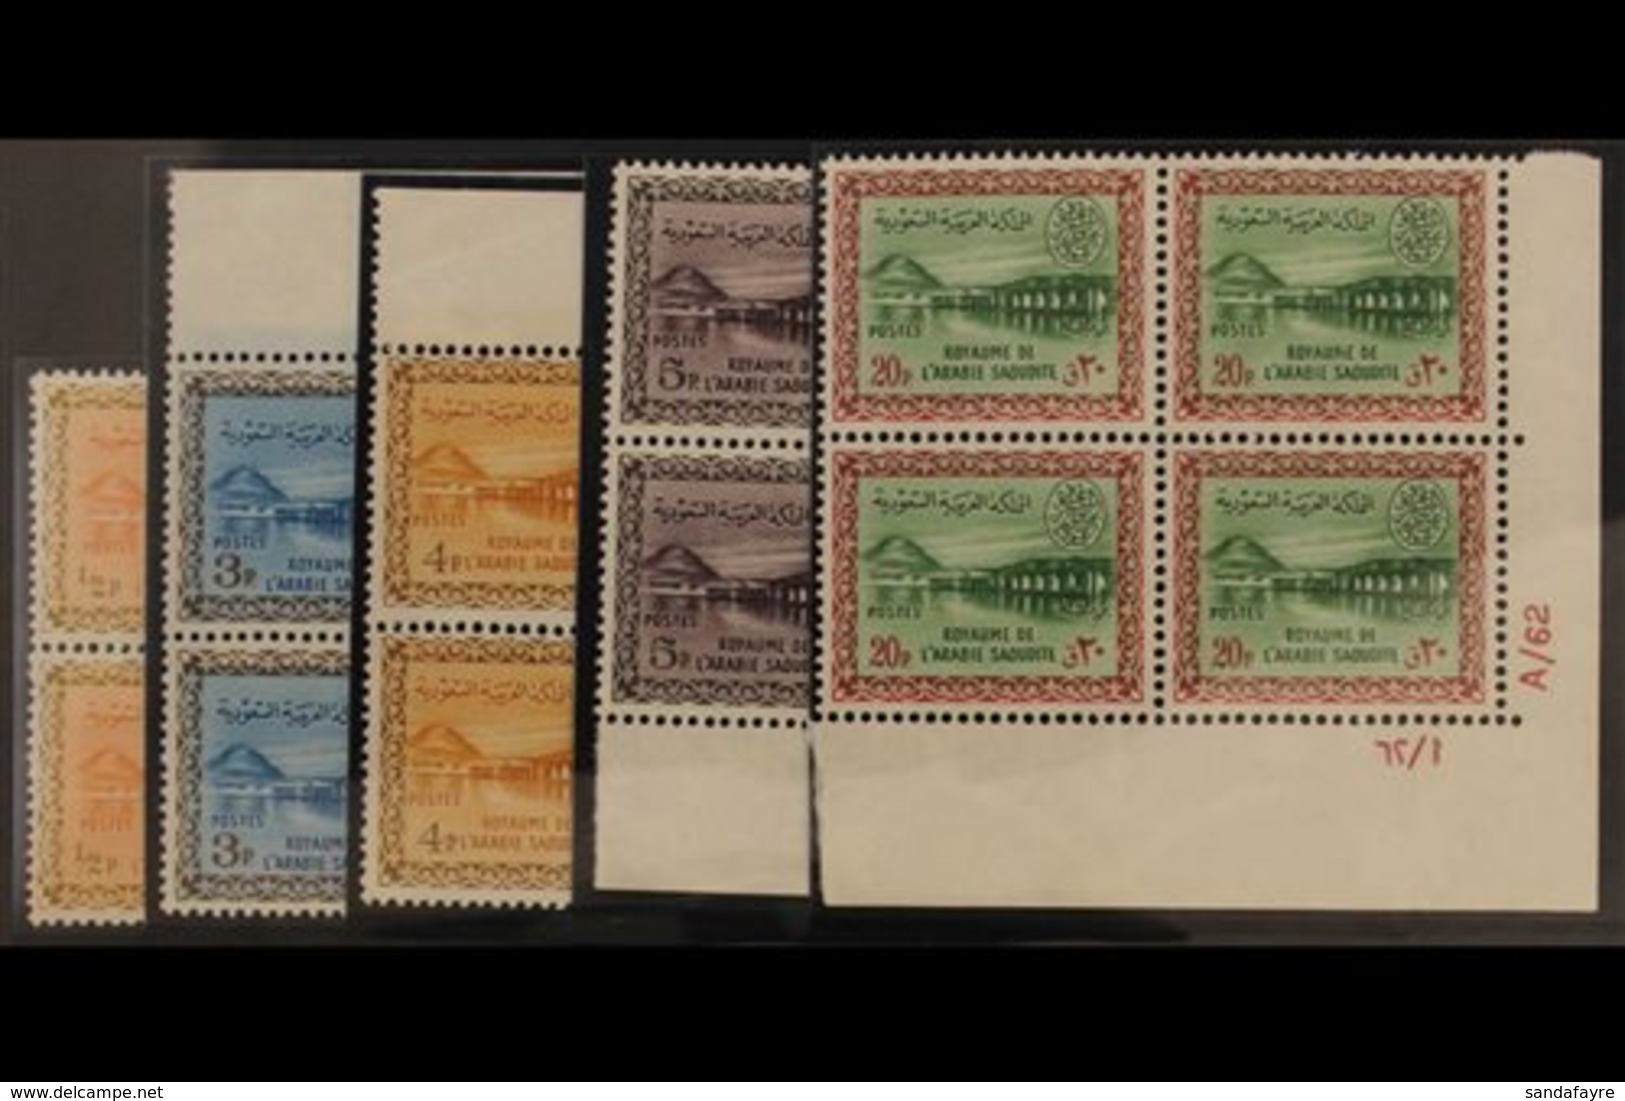 1963 - 5  Wadi Hanifa Dam Set, Wmk Palm And Crossed Swords, SG 476/80, In Superb Never Hinged Blocks Of 4. (20 Stamps) F - Saudi-Arabien